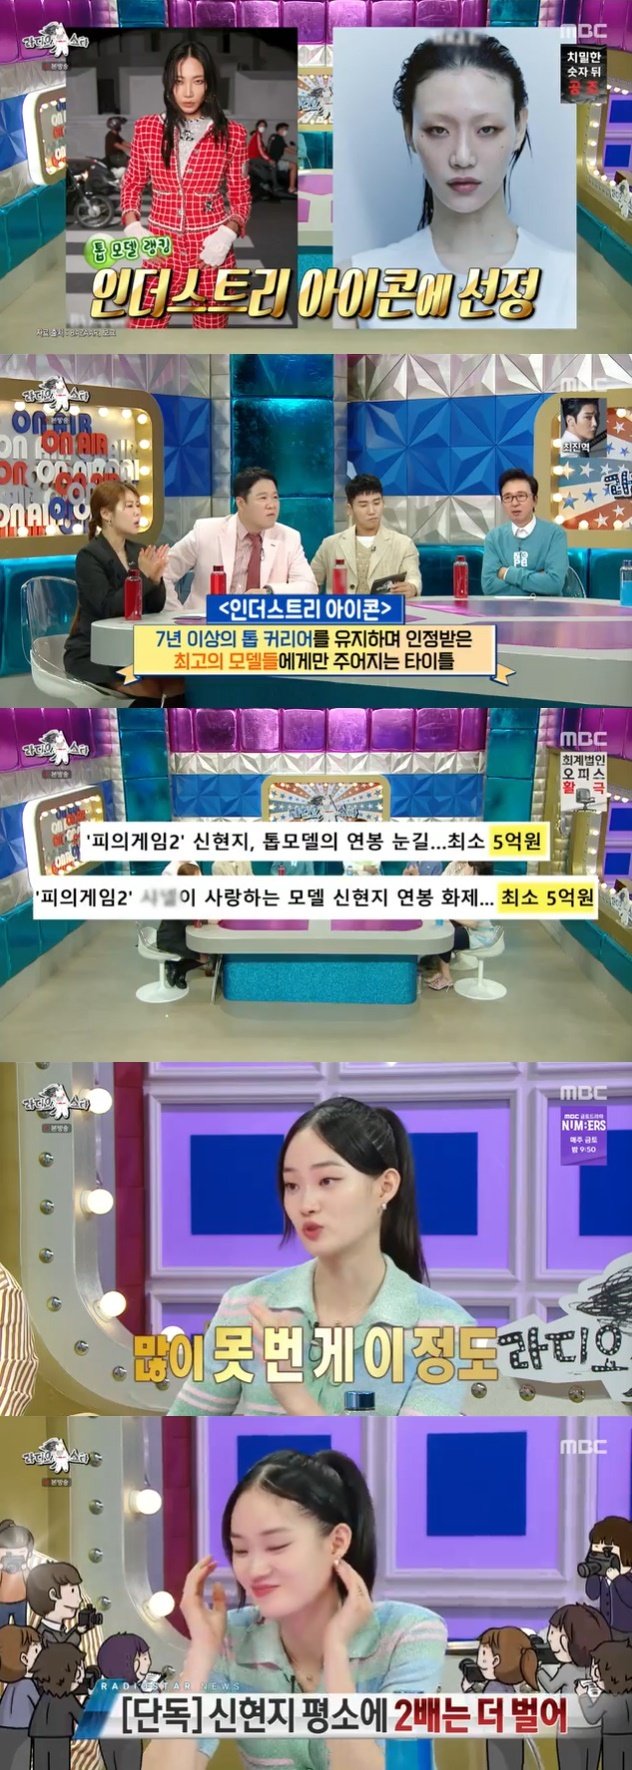 '제니 절친' 신현지 연봉 5억으로 알려졌지만 사실 2배는 더 벌어